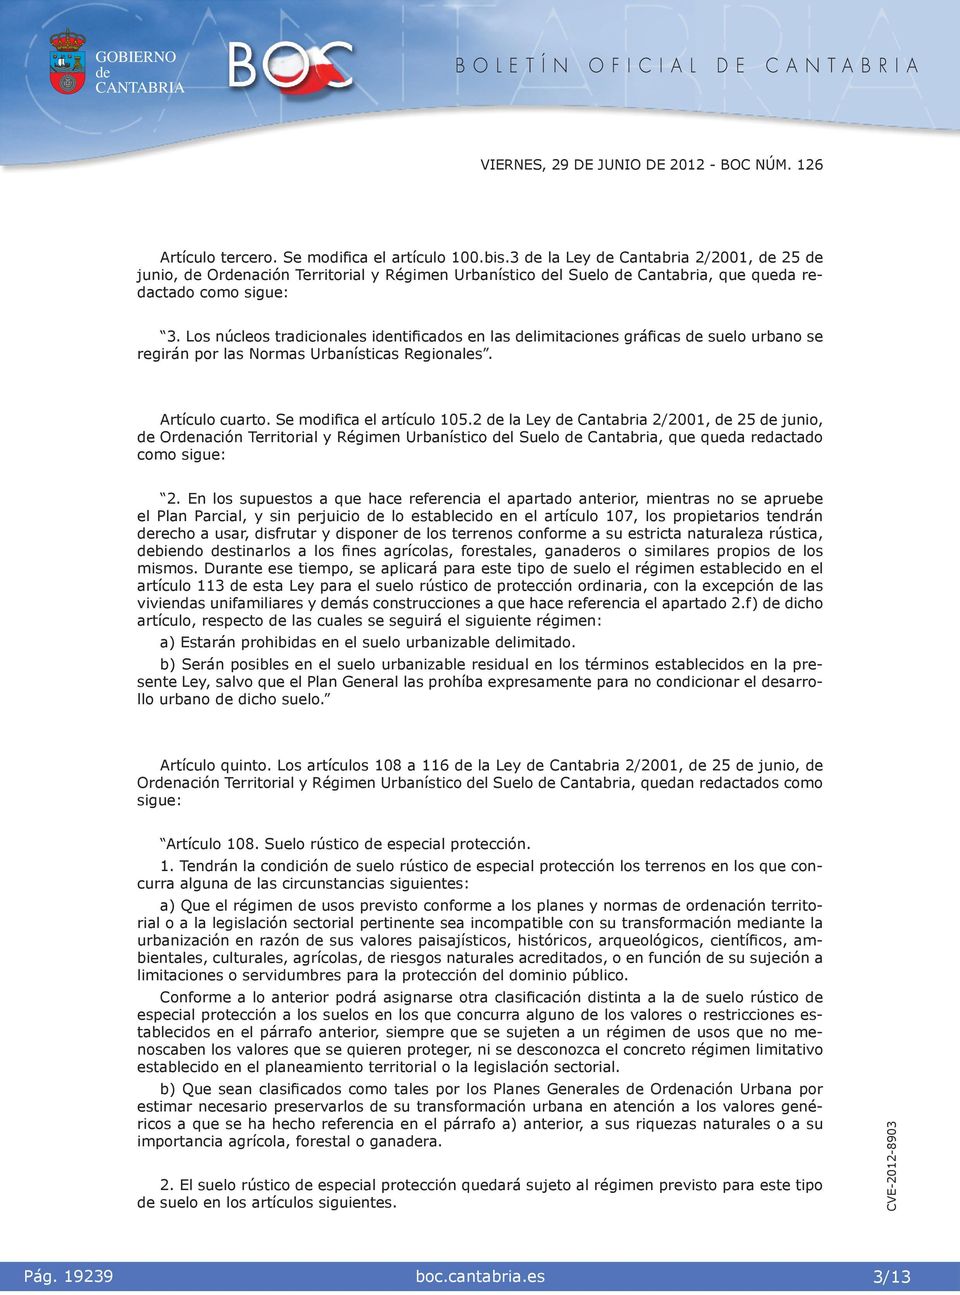 2 la Ley Cantabra 2/2001, 25 juno, Ornacón Terrtoral y Régmen Urbanístco l Suelo Cantabra, que queda redactado como sgue: 2.